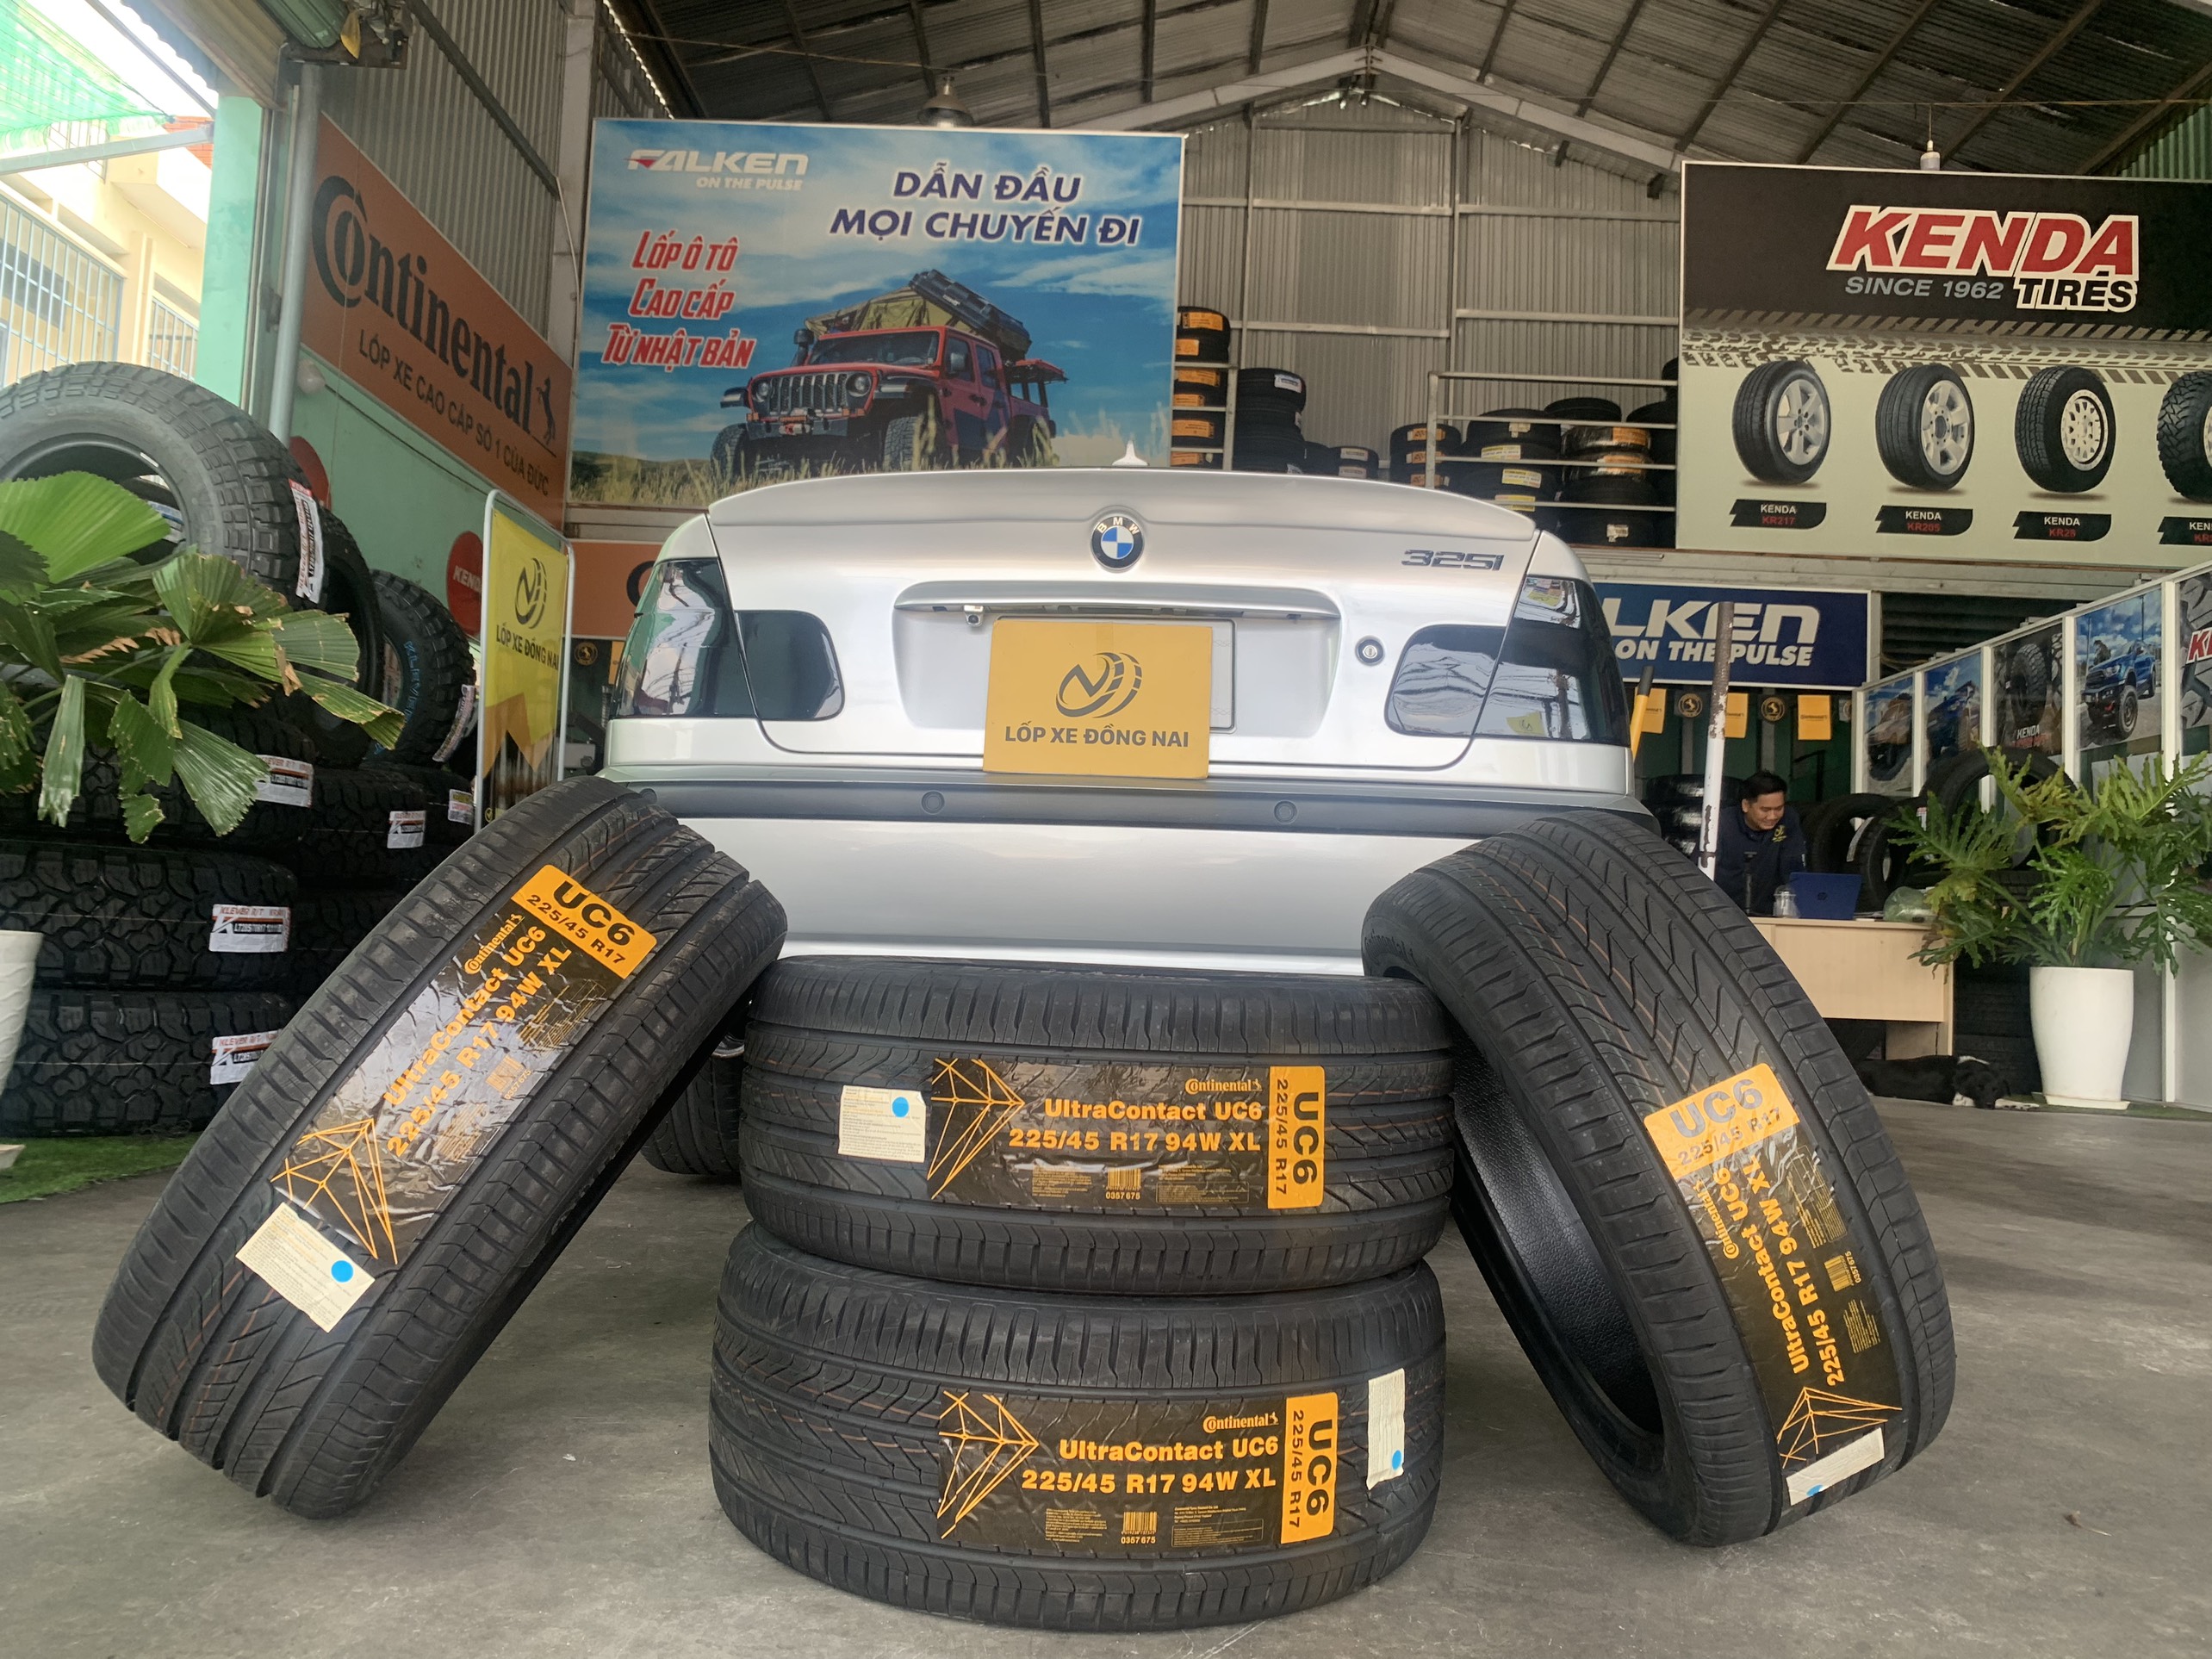 TƯ VẤN : Thay lốp xe BMW 325i ở Nhơn Trạch